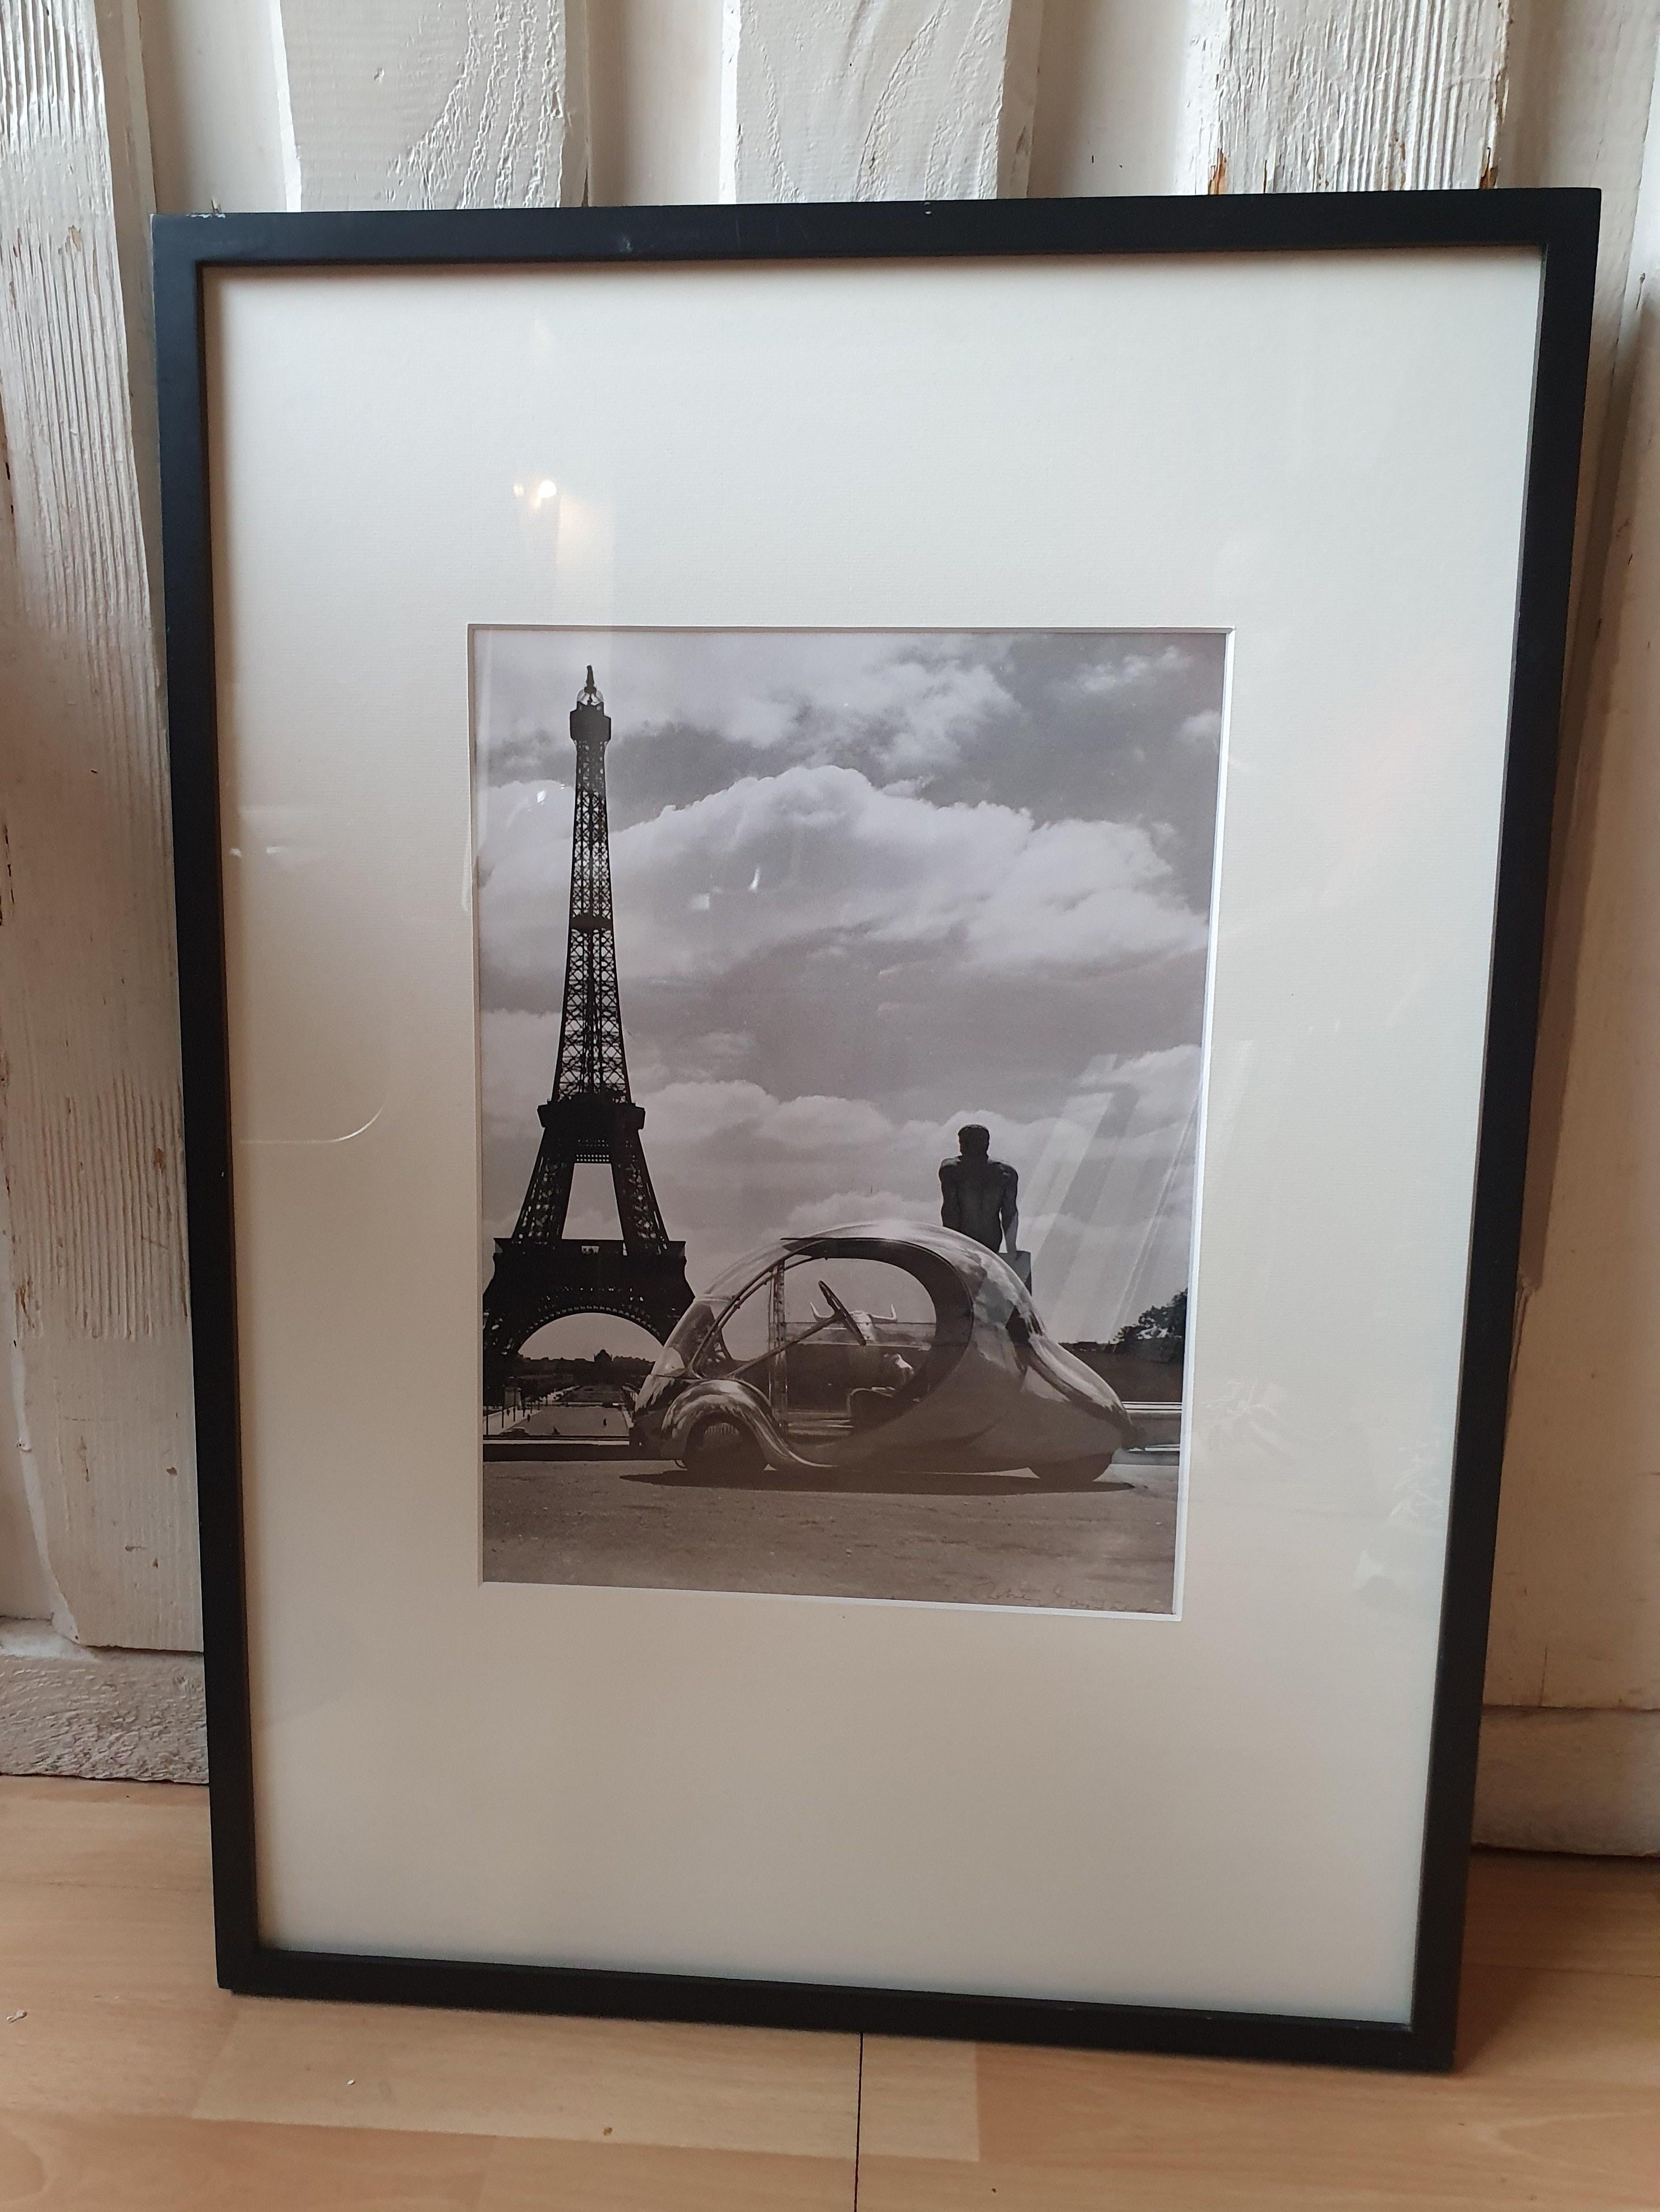 Robert Doisneau Paul Arzens' "Elektrisches Ei" vor dem Eiffelturm
Silberner Druck
1980
Signiert unten rechts
40.5 x 33.5 cm
Abmessungen mit Rahmen: 73 x 52,5 cm
Unikat

Dieses von Paul Arzens 1942 erfundene Automobil wurde vollständig aus Aluminium